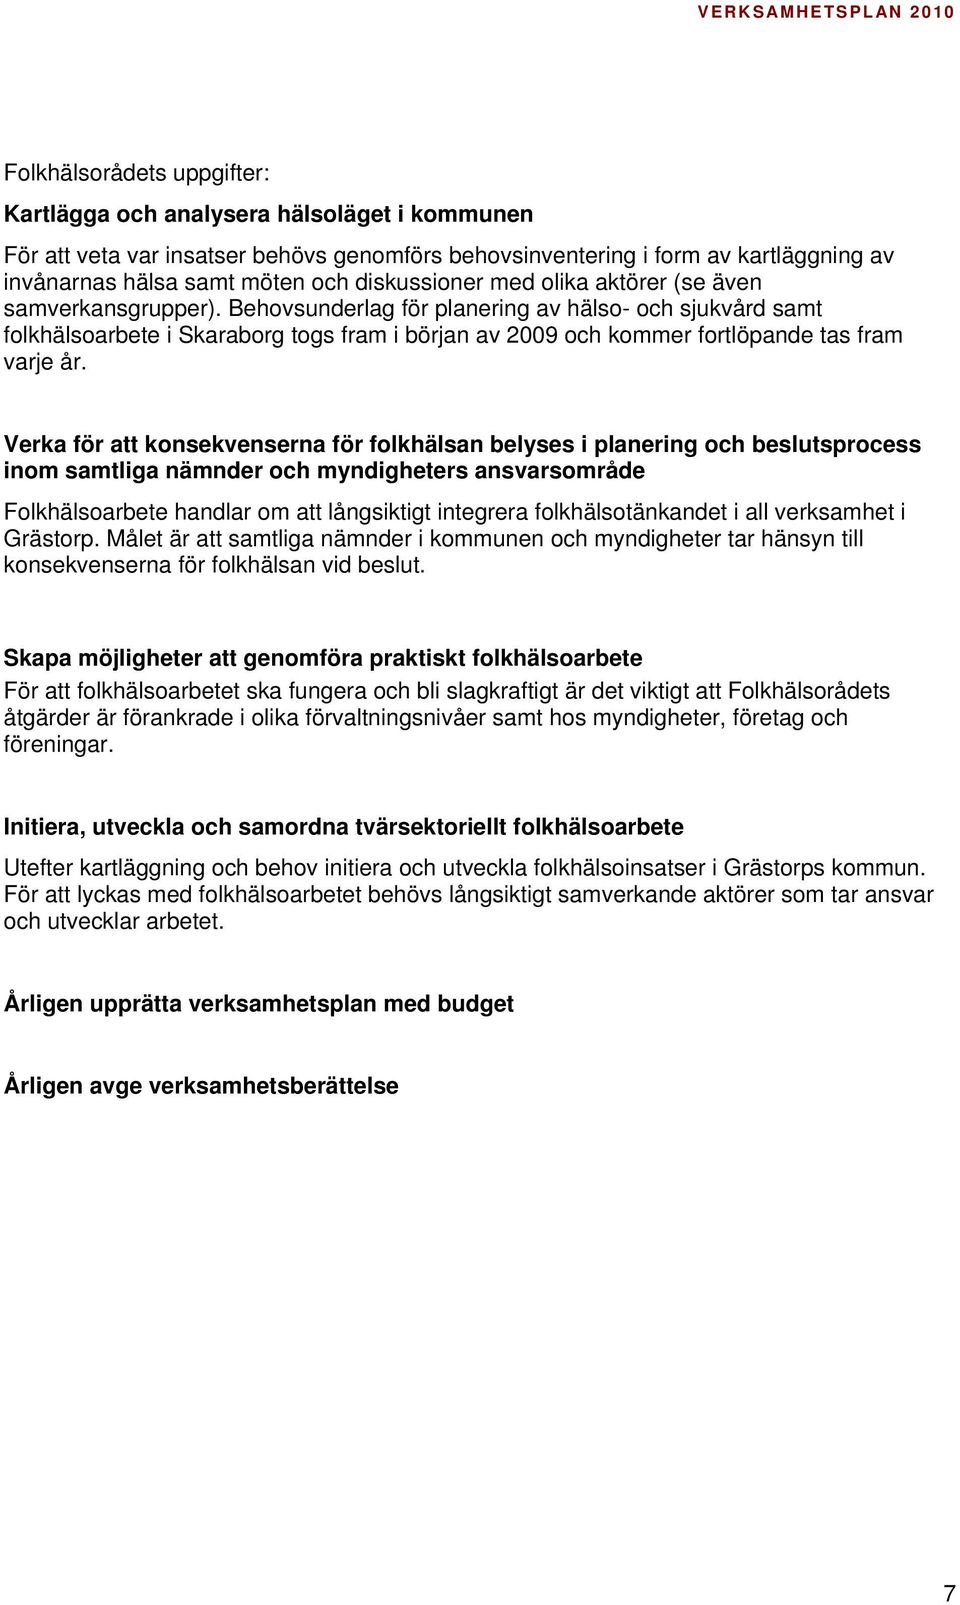 Behovsunderlag för planering av hälso- och sjukvård samt folkhälsoarbete i Skaraborg togs fram i början av 2009 och kommer fortlöpande tas fram varje år.